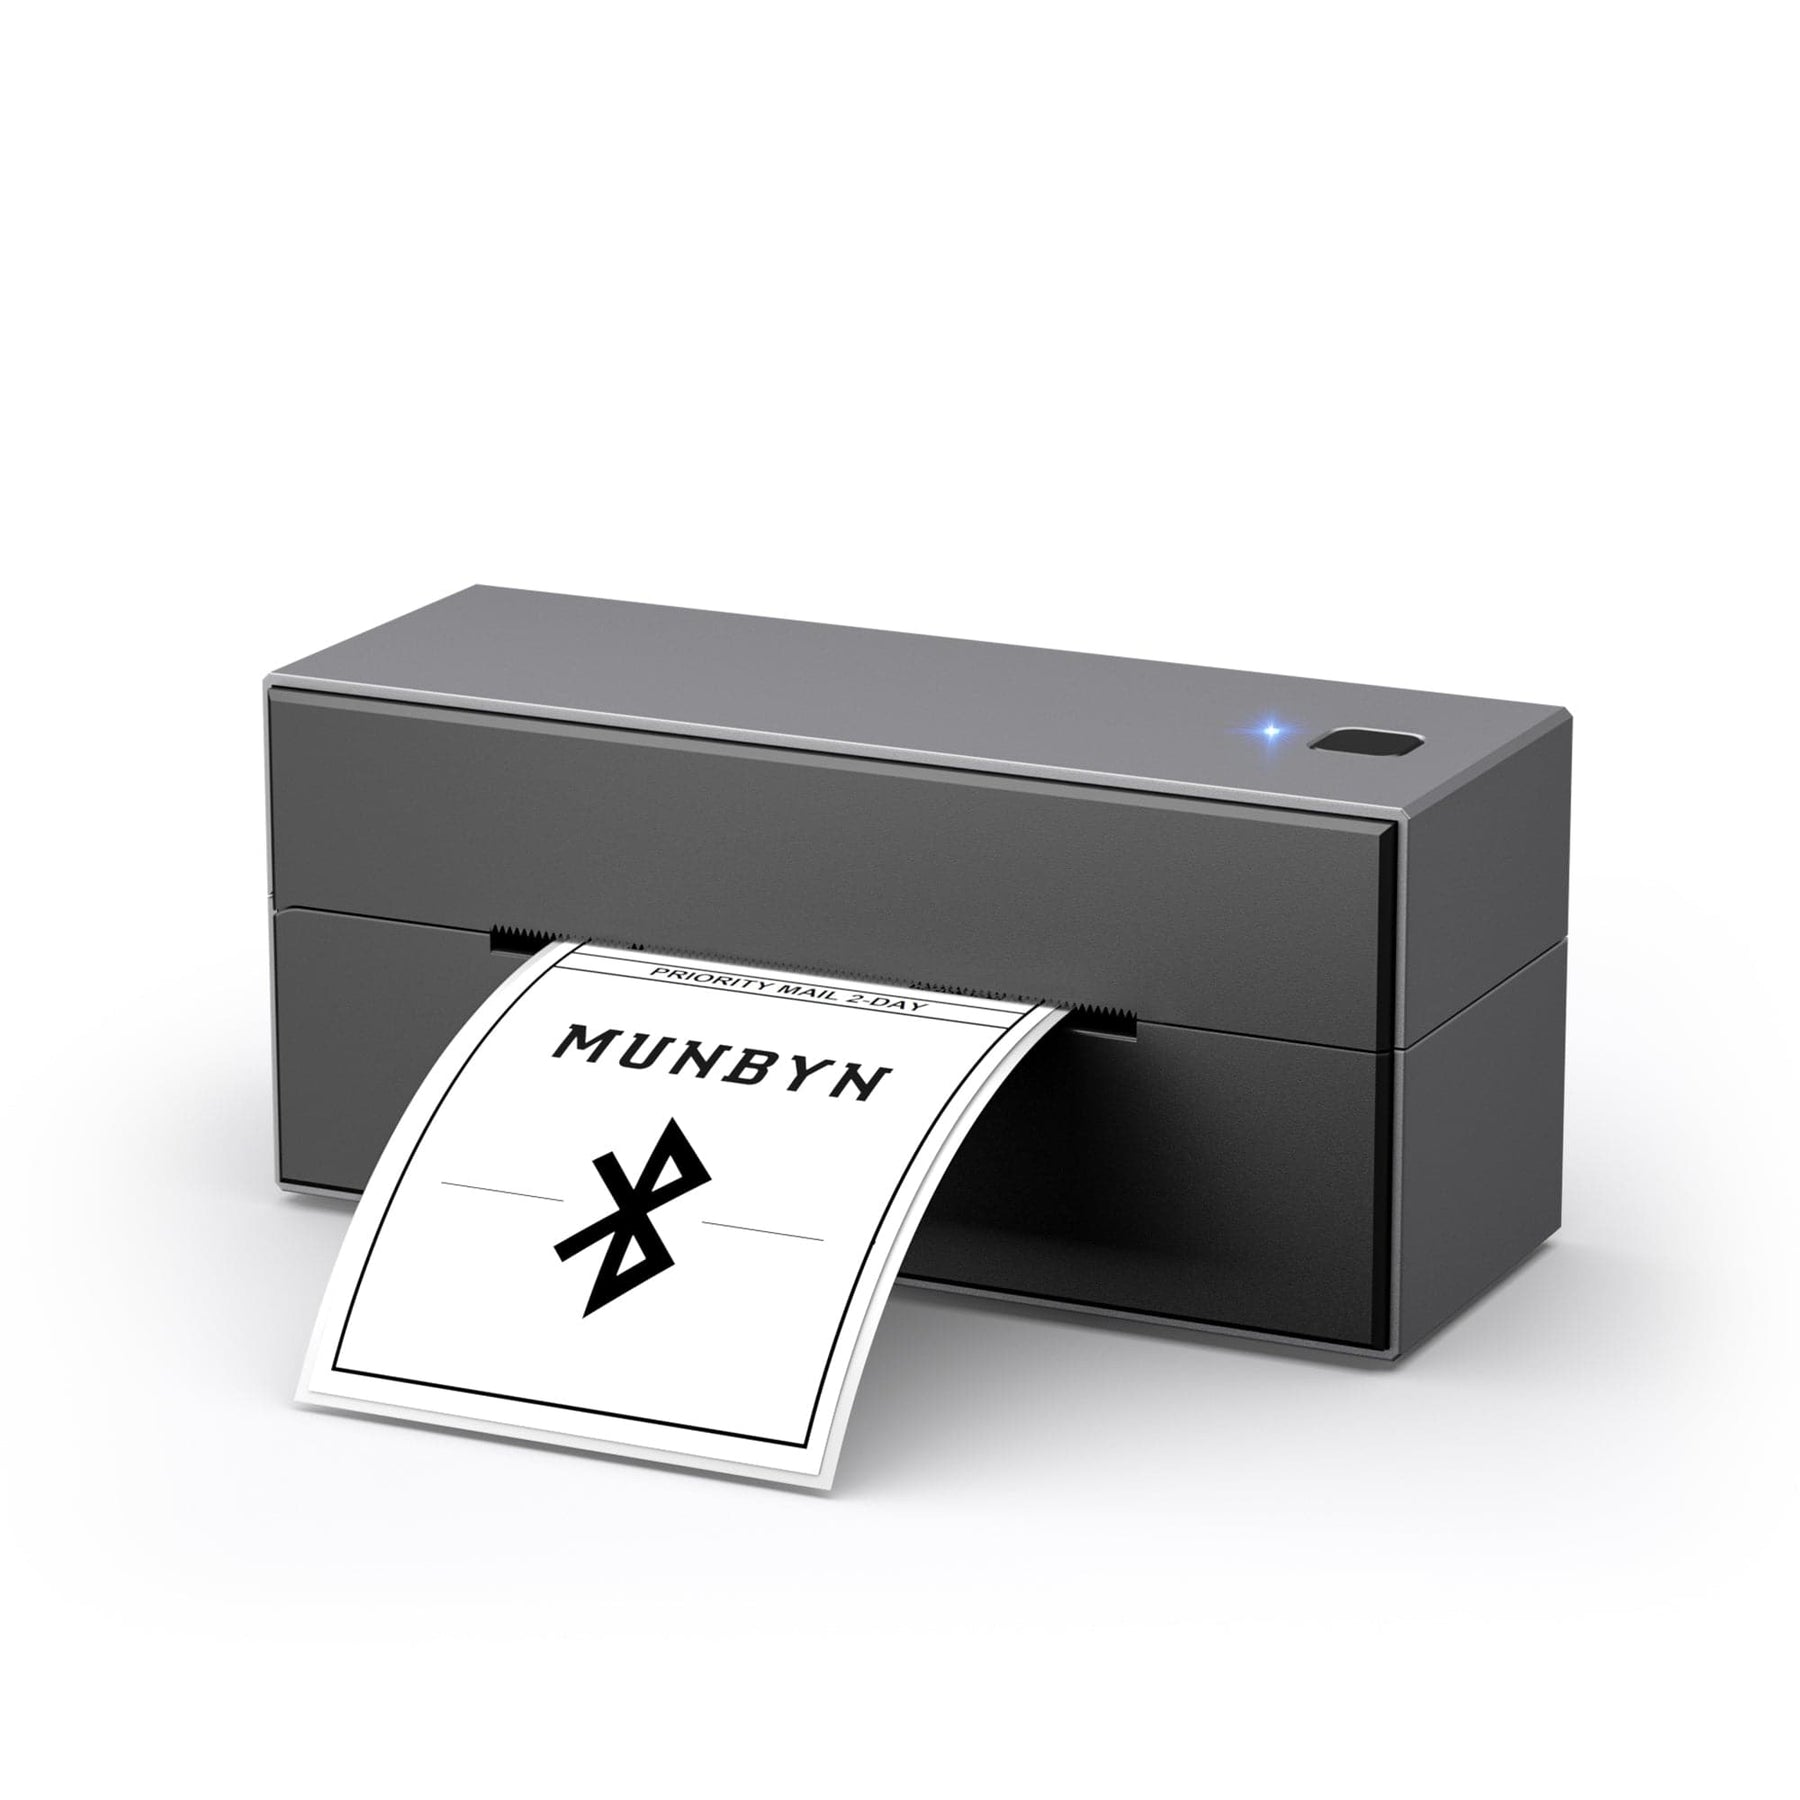 MUNBYN RealWriter 130 Thermal Label Printer